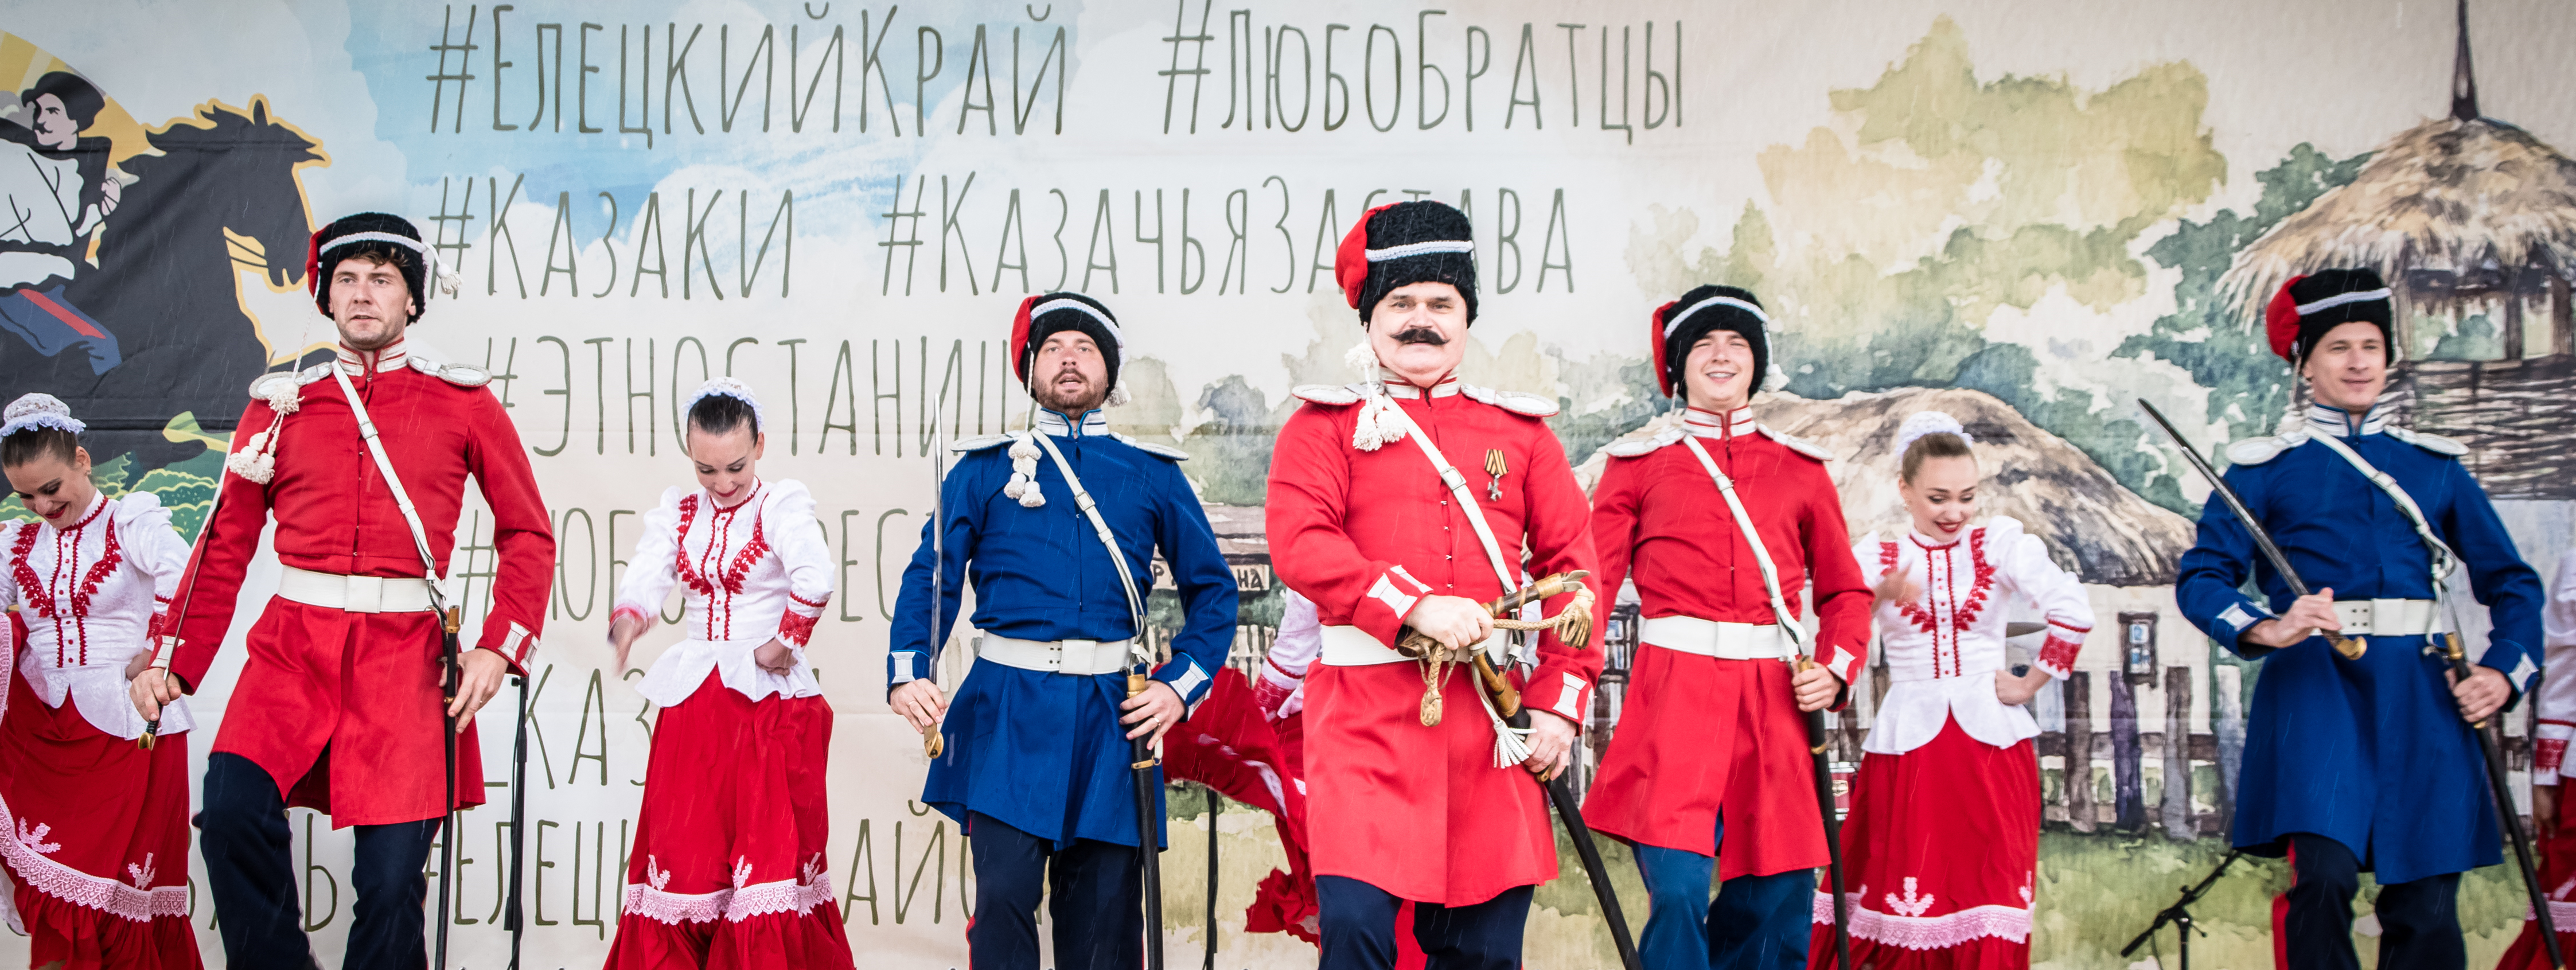 Межрегиональный фестиваль традиционной казачьей культуры «Казачья застава» 